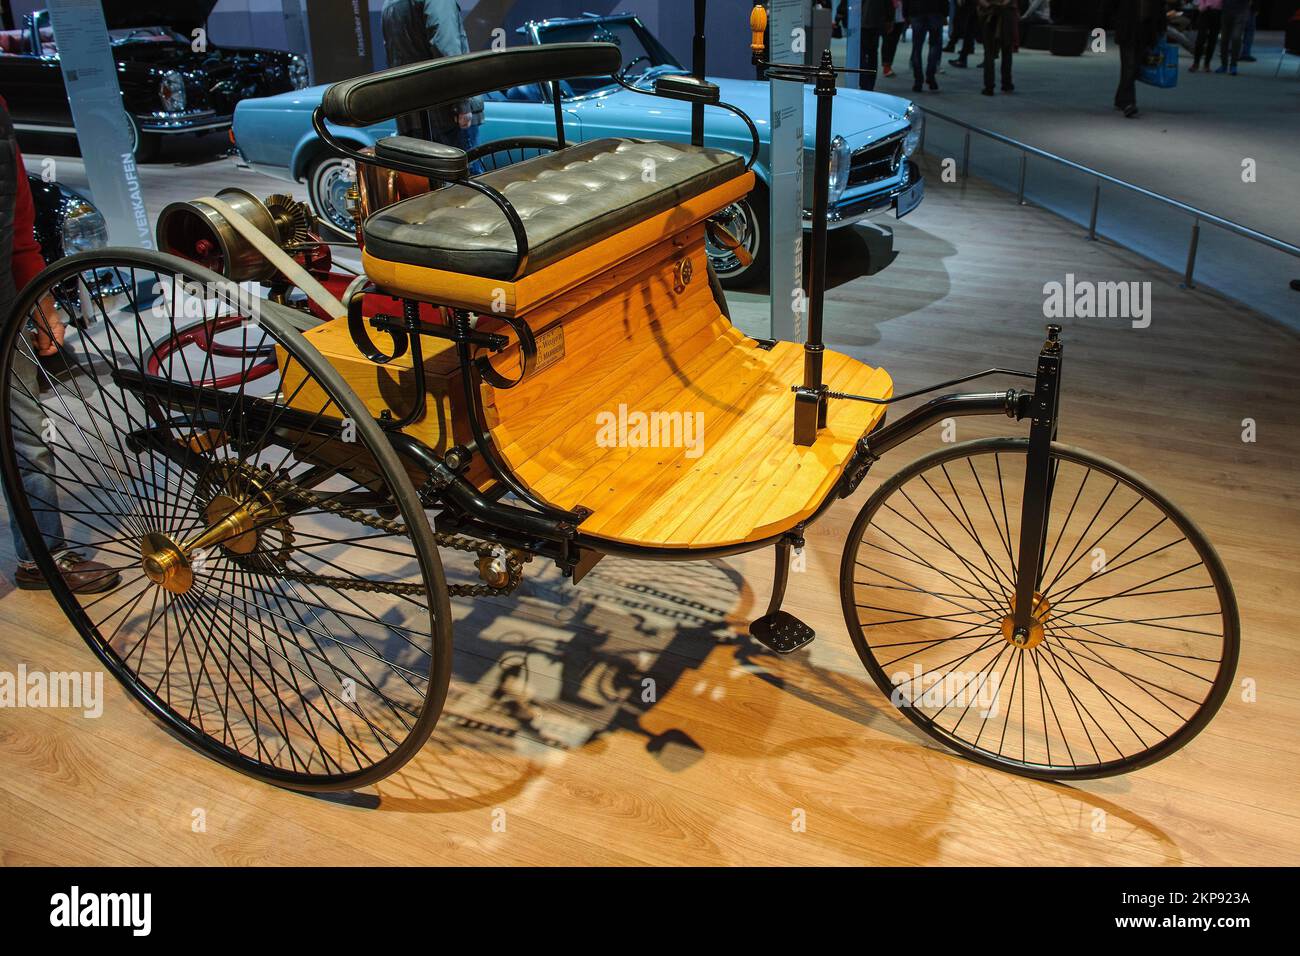 Première automobile à trois roues construite par Carl Benz avec moteur à combustion véhicule avec moteur à essence Benz Patent-Motorwagen Nummer 1, année de co Banque D'Images